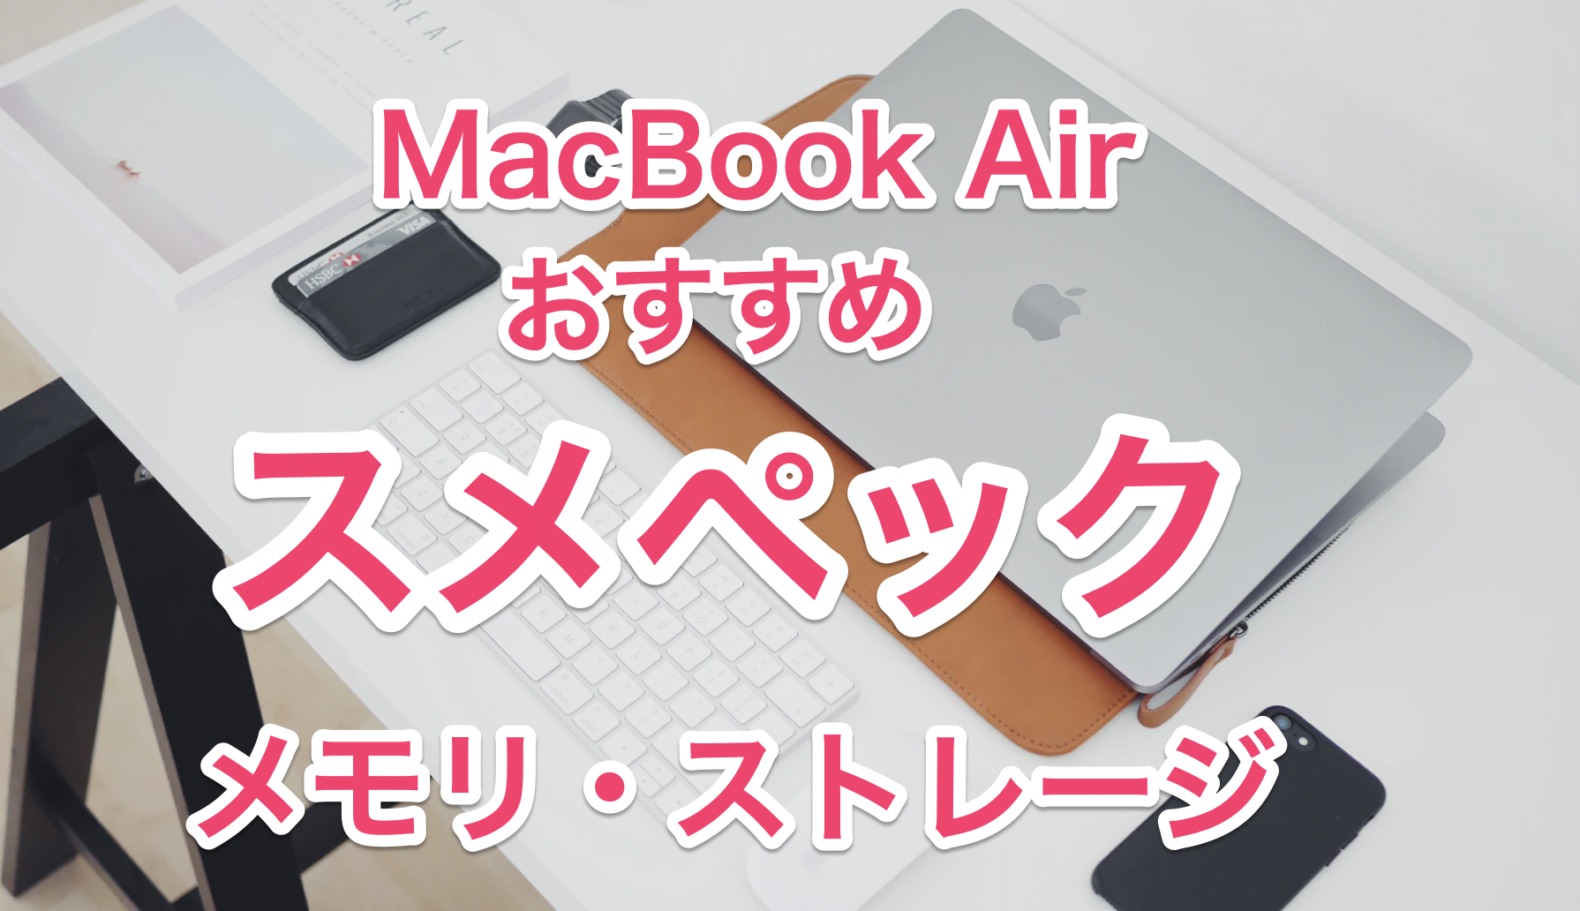 2022/M1】MacBook Airおすすめのメモリとストレージまとめ【結論：8GB 